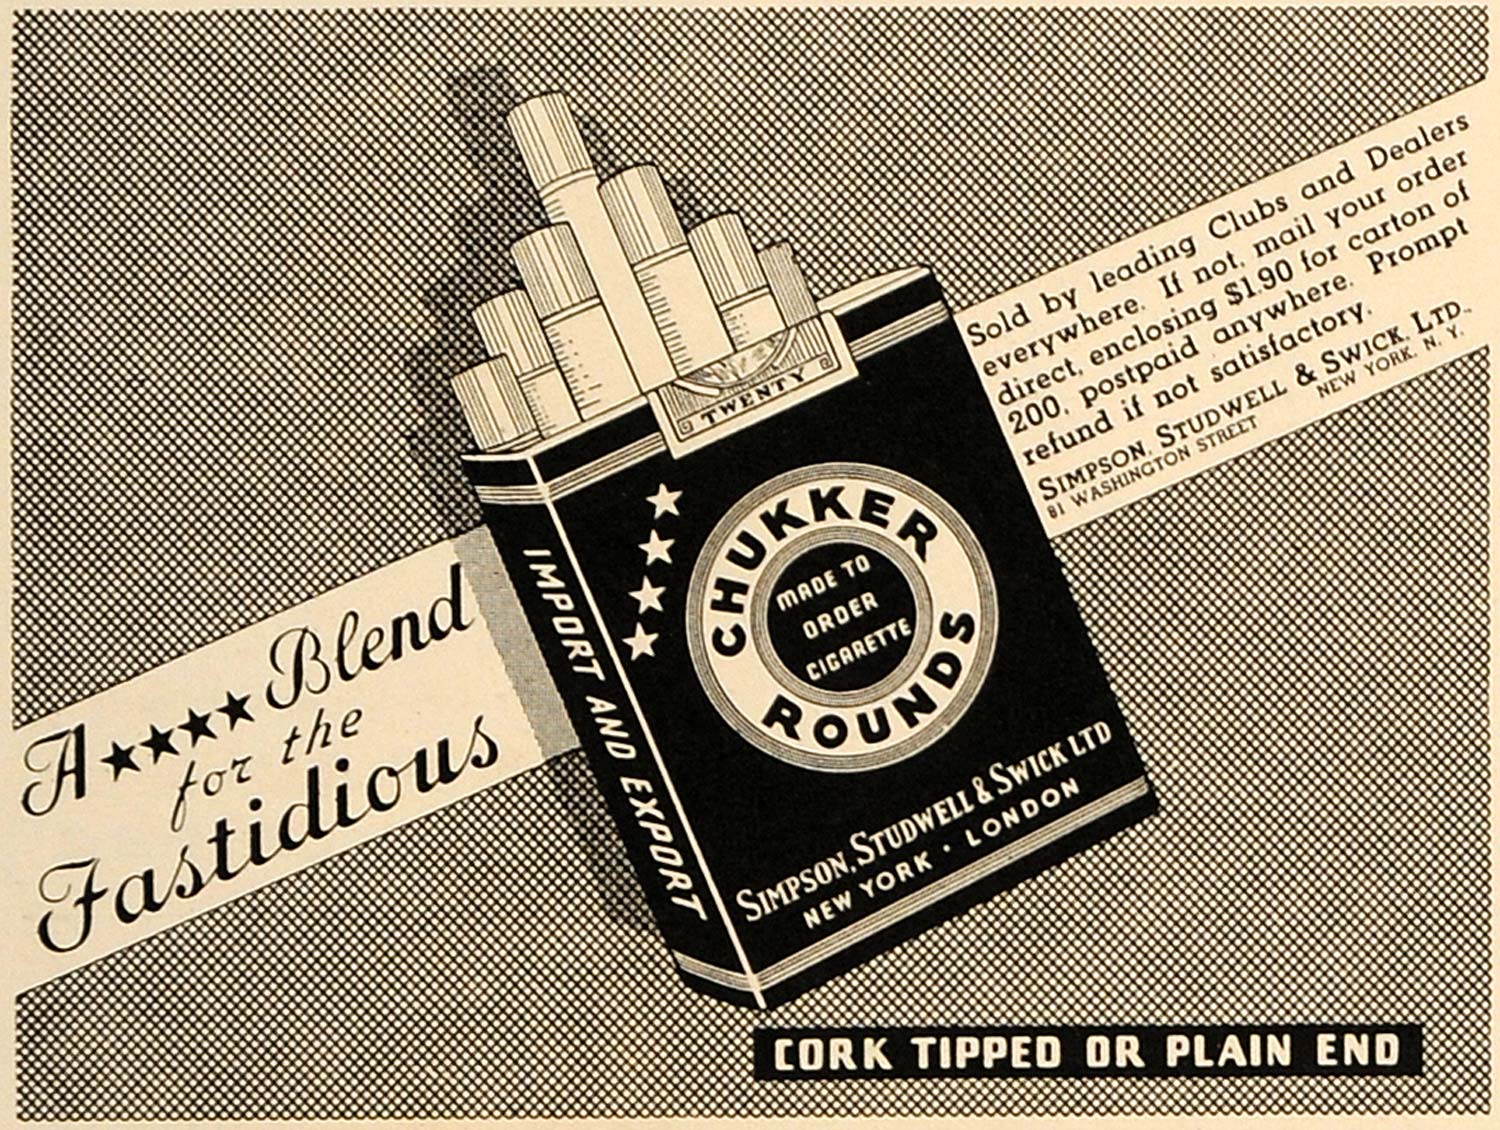 1937 Ad Simpson Studwell Swick Chukker Round Cigarettes - ORIGINAL ESQ2